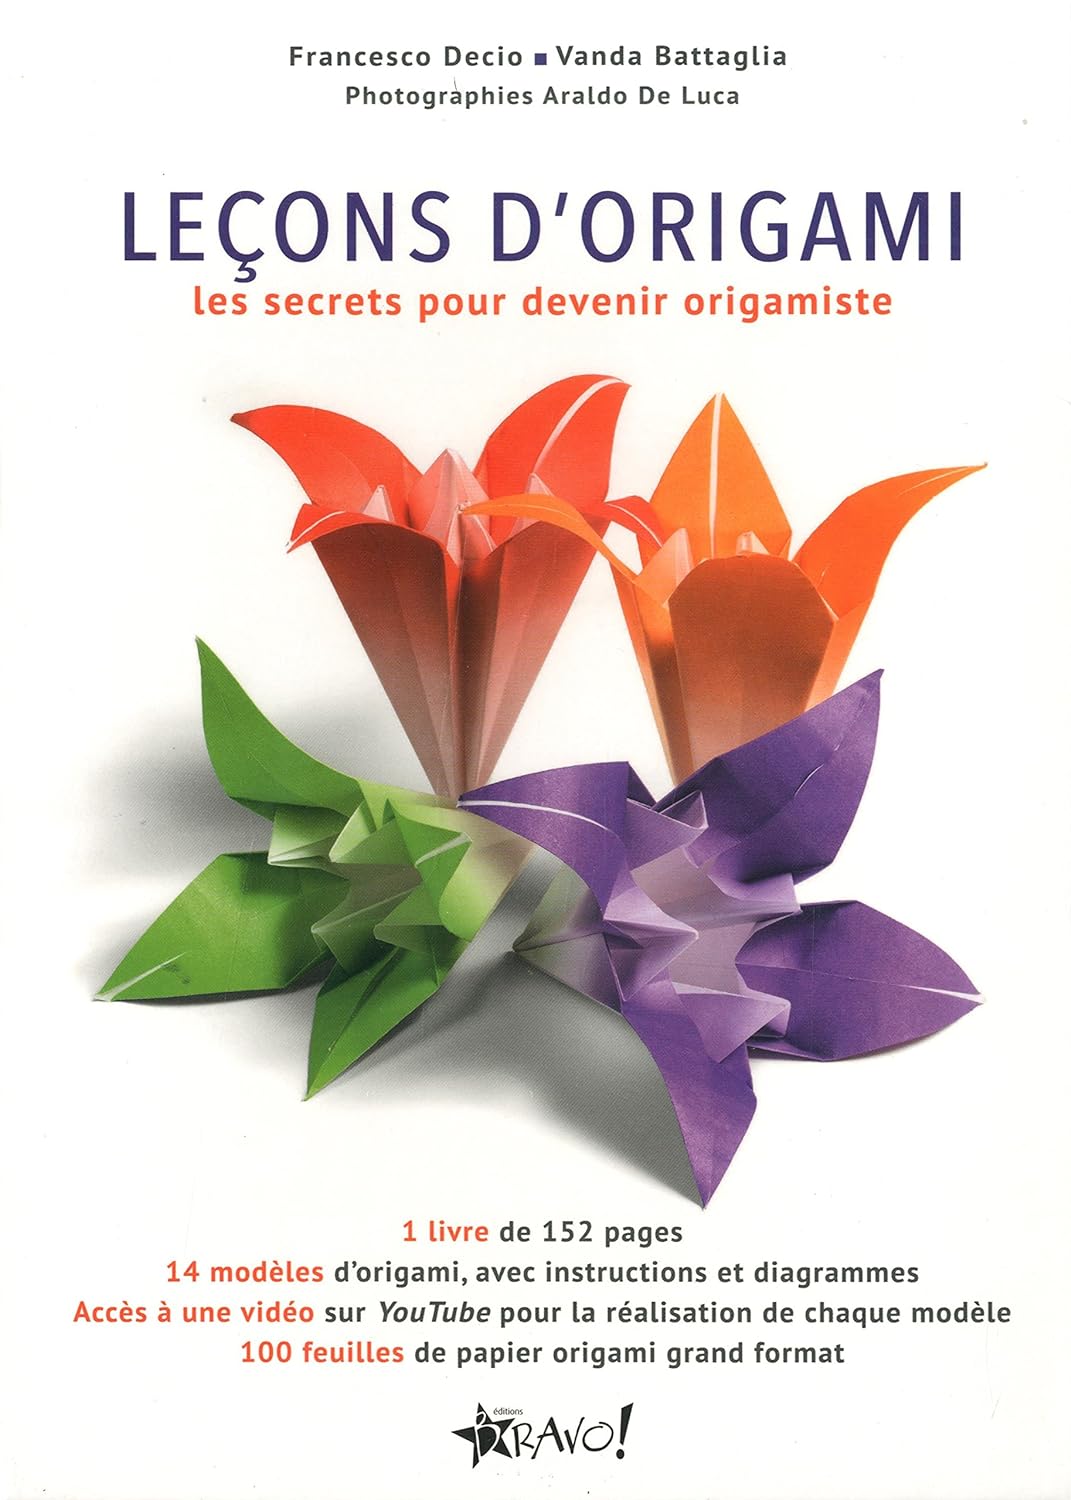 Leçons d'origami : Les secrets pour devenir origamiste (Fiches manquantes) - Francesco Decio